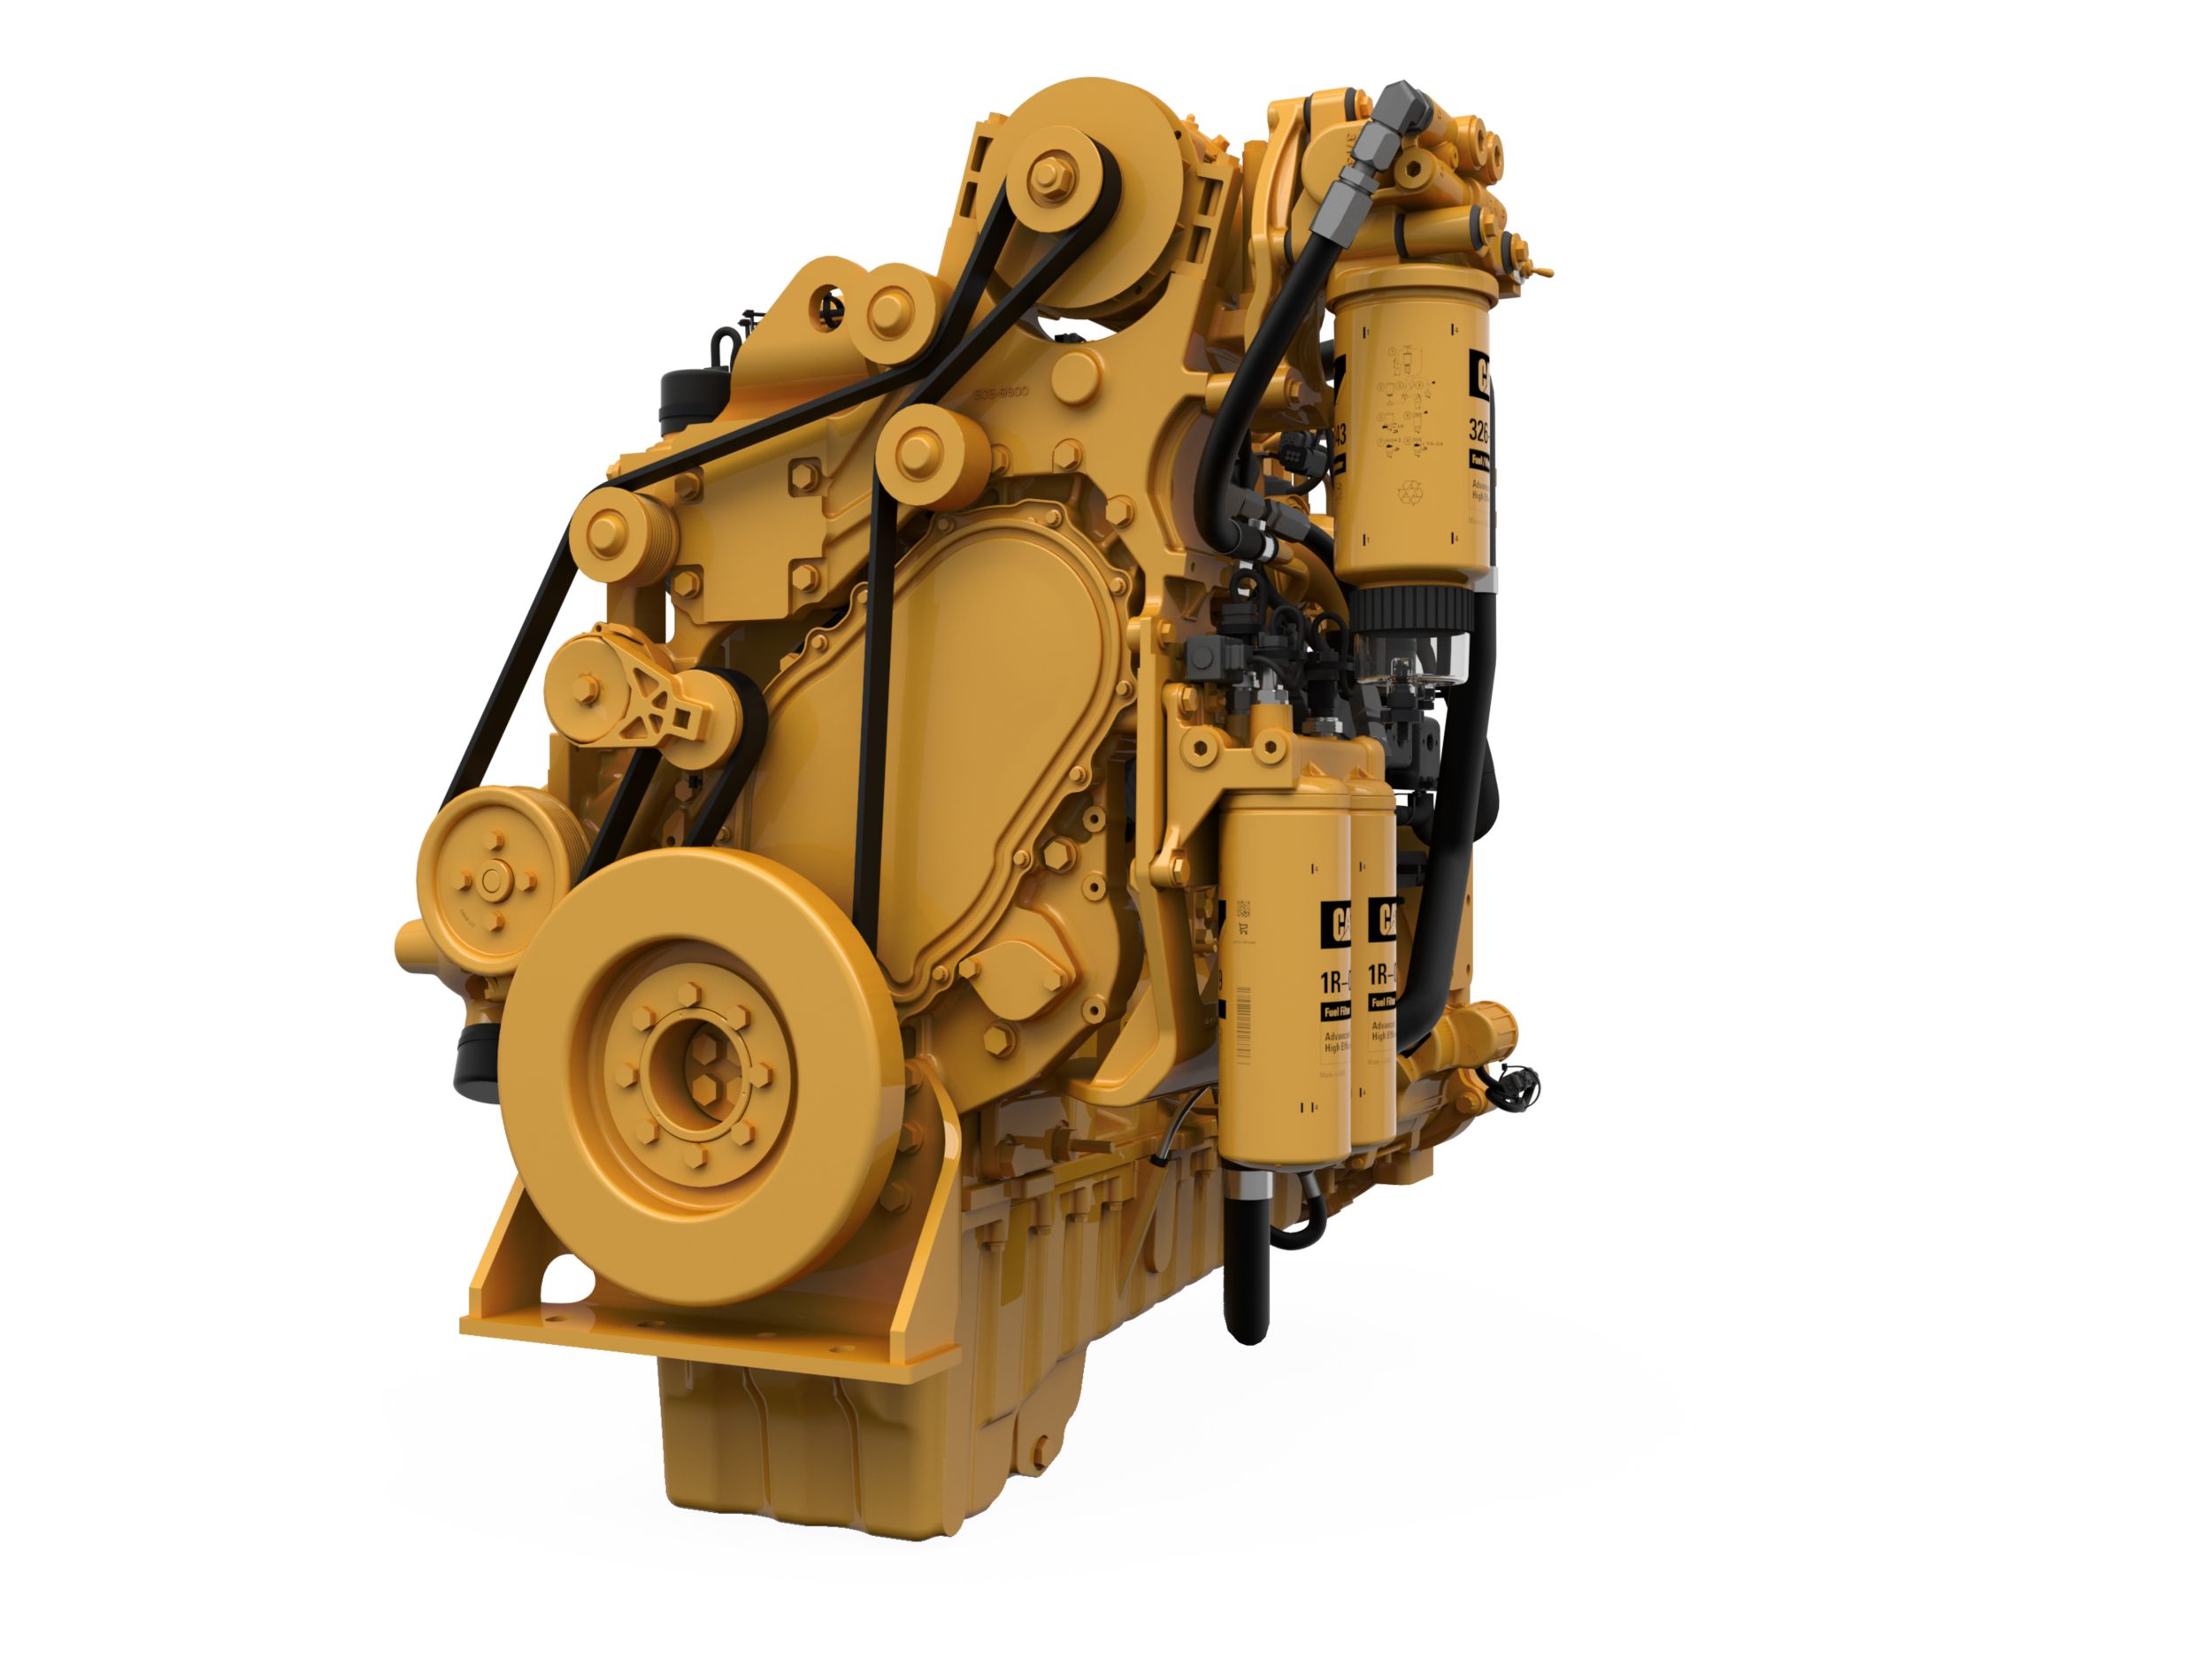 Silniki wysokoprężne C9.3B LRC – rynki objęte regulacjami o niższych wymaganiach i bez obowiązujących regulacji